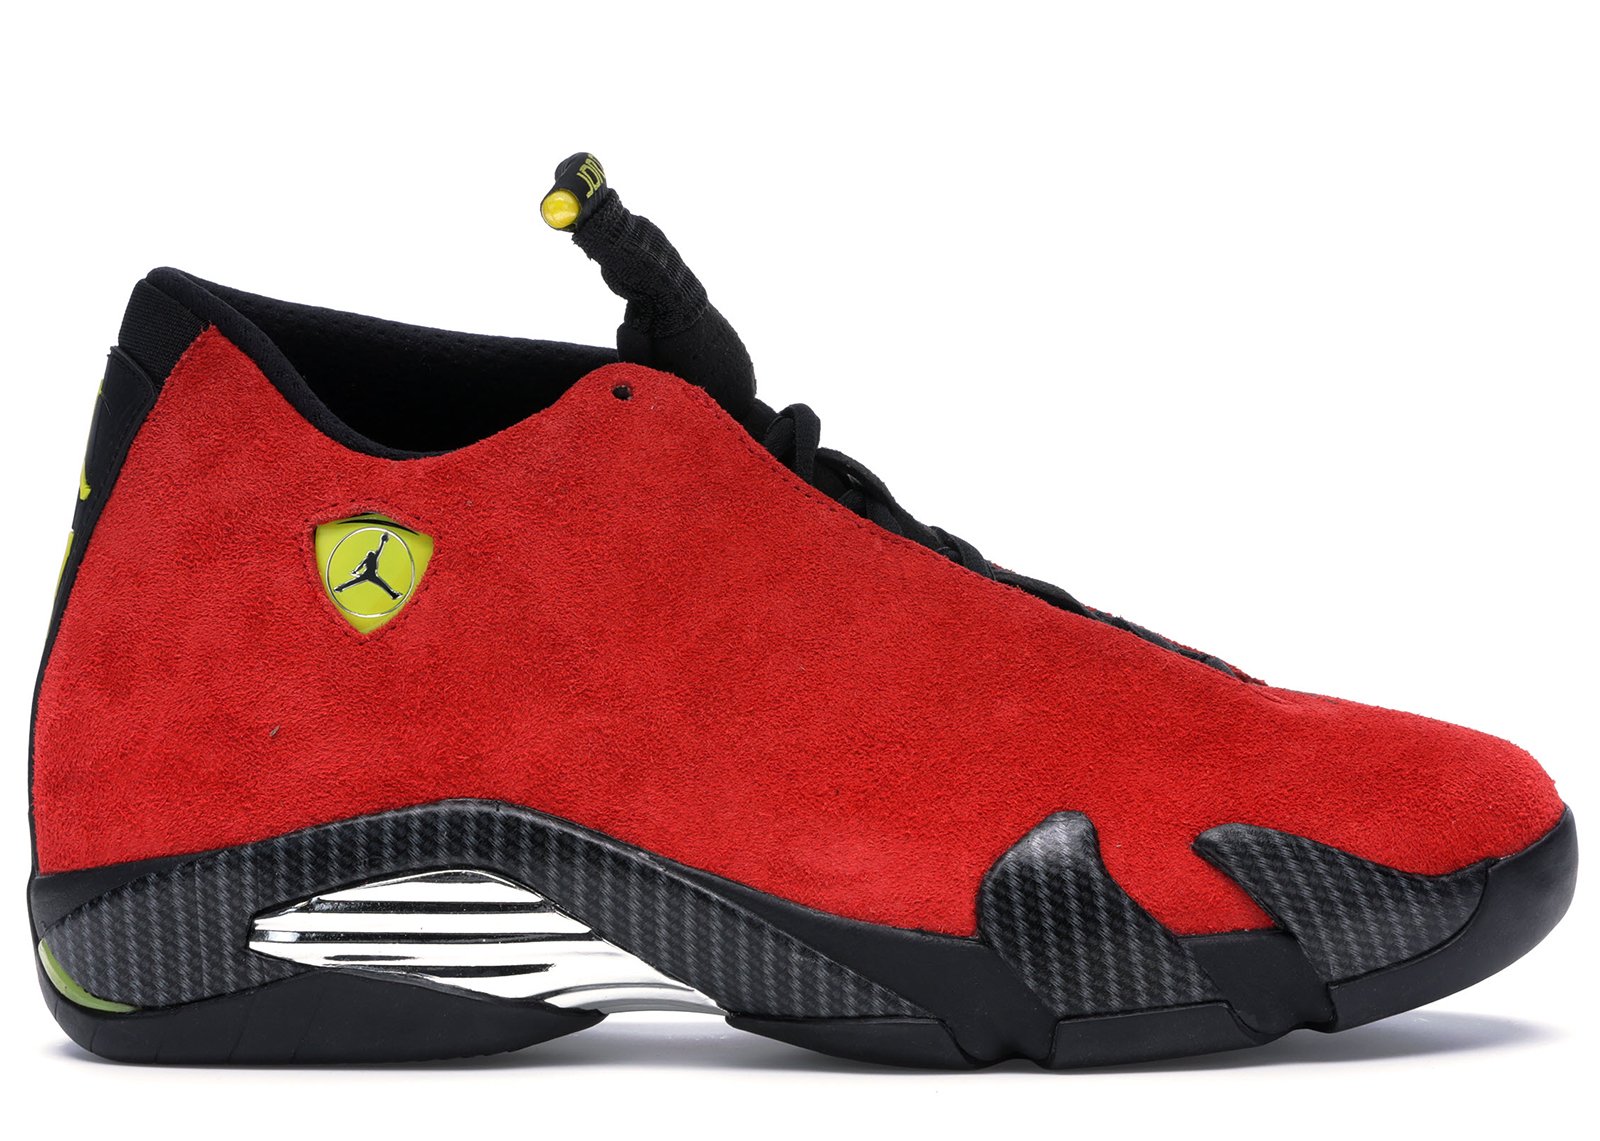 Jordan 14 Retro Challenge Red sneakers